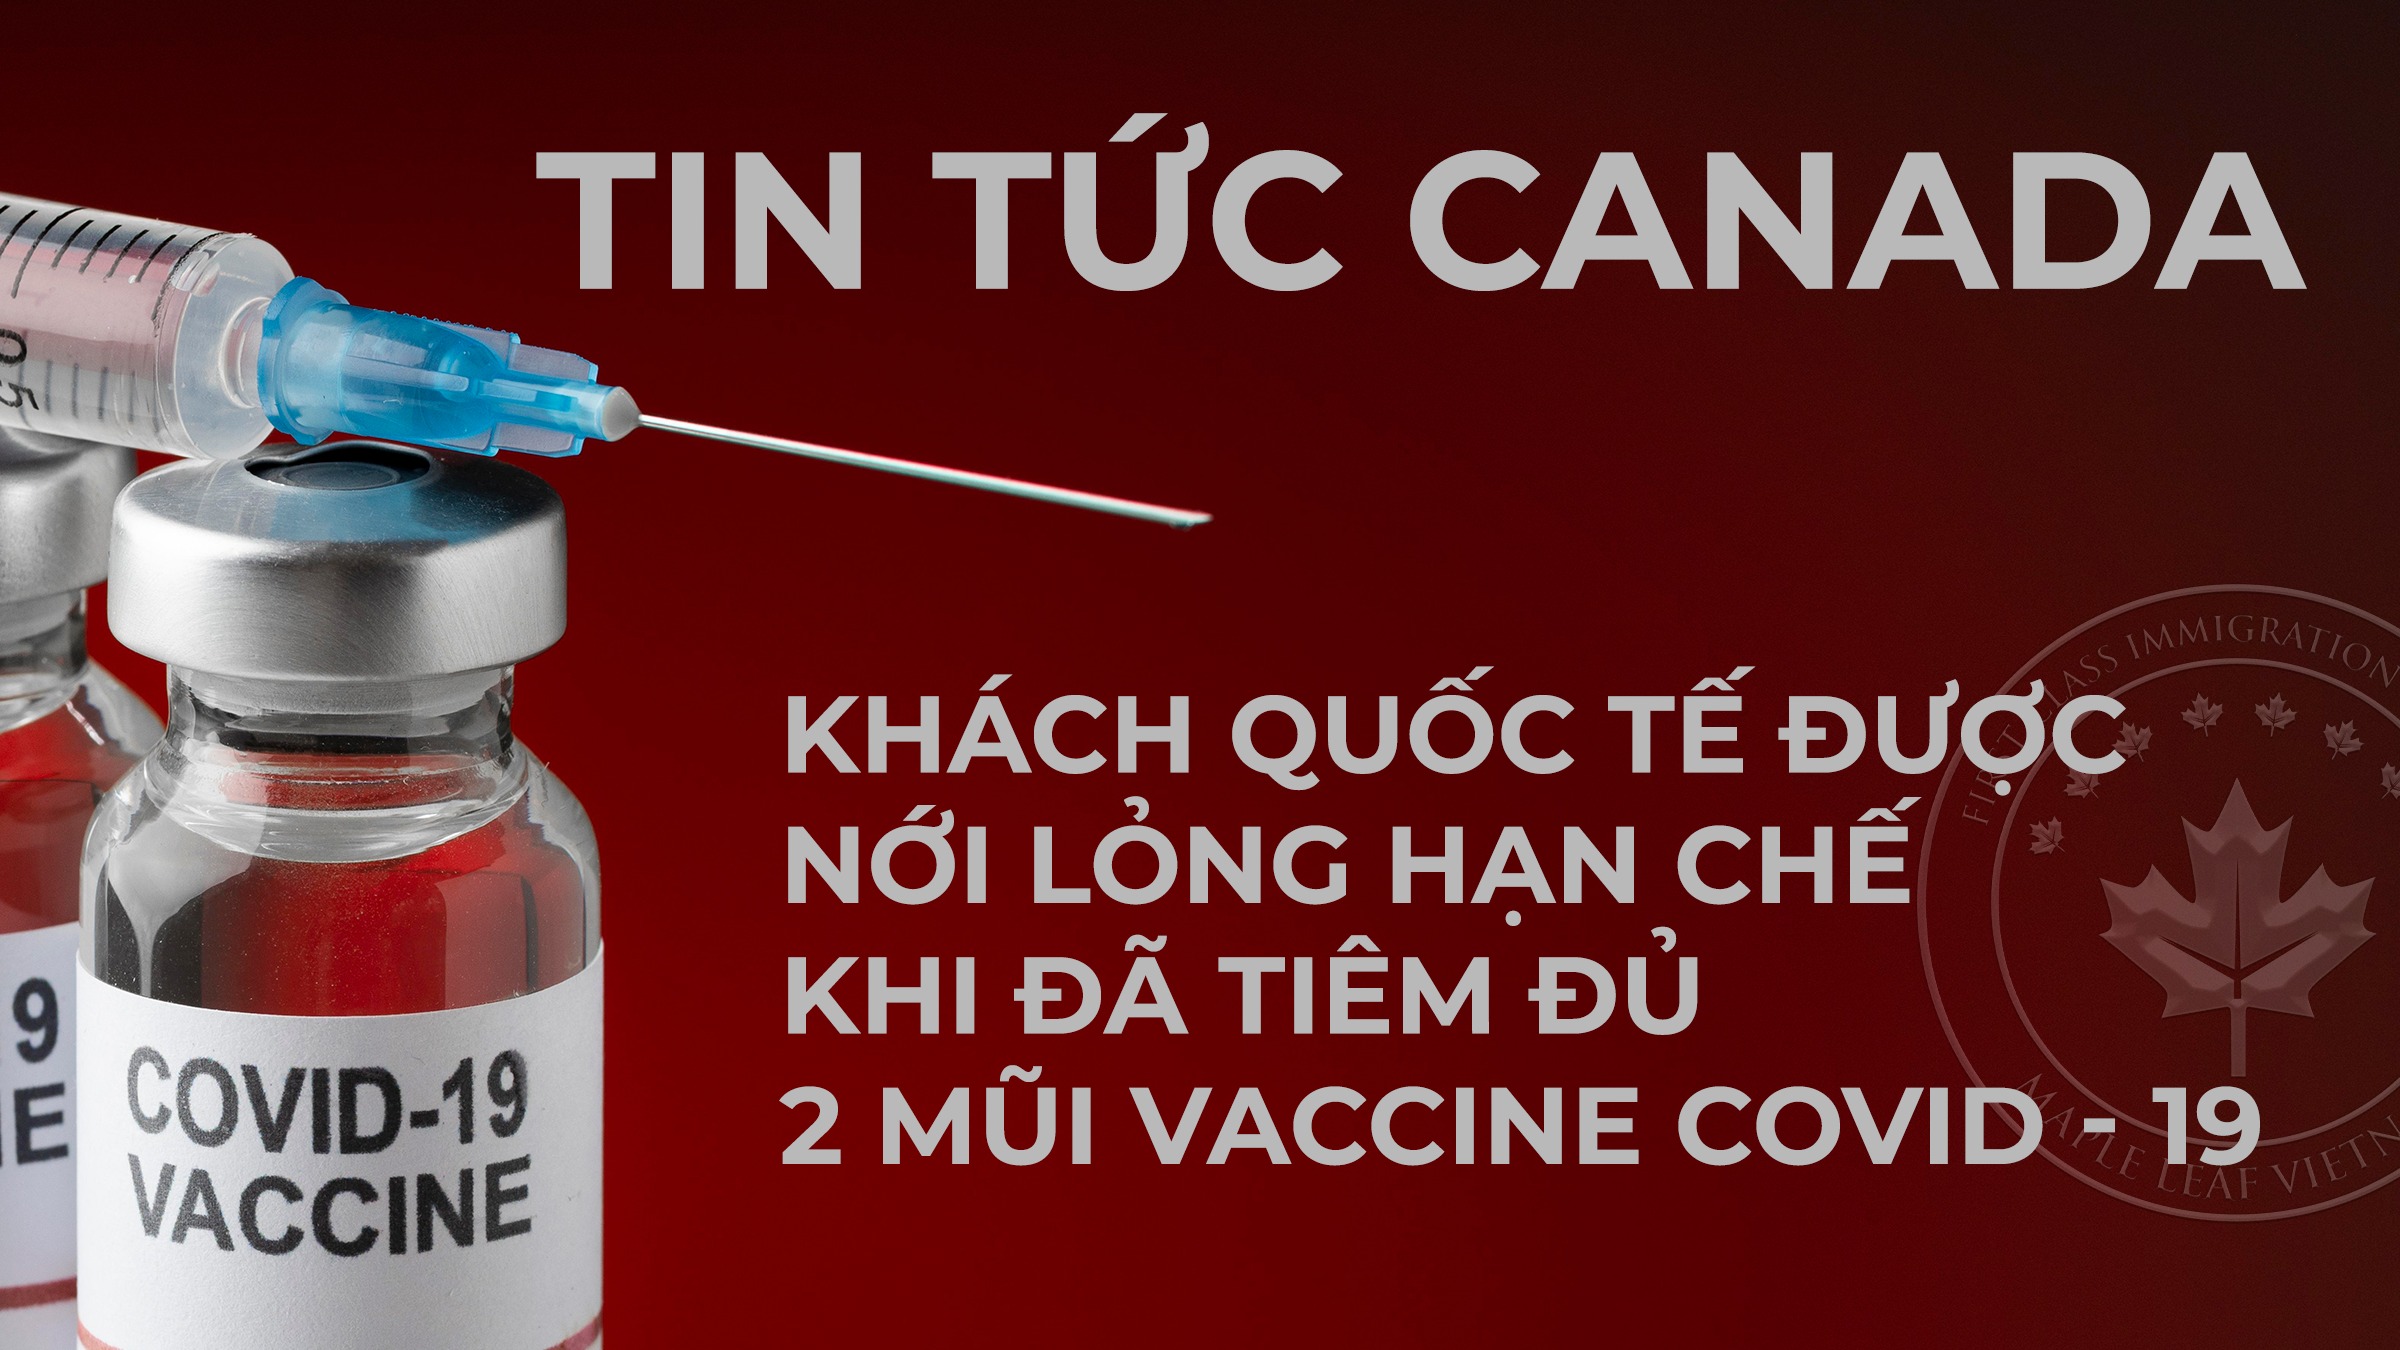 dinh-cu-canada-noi-long-han-che-voi-khach-quoc-te-tiem-du-lieu-vaccine